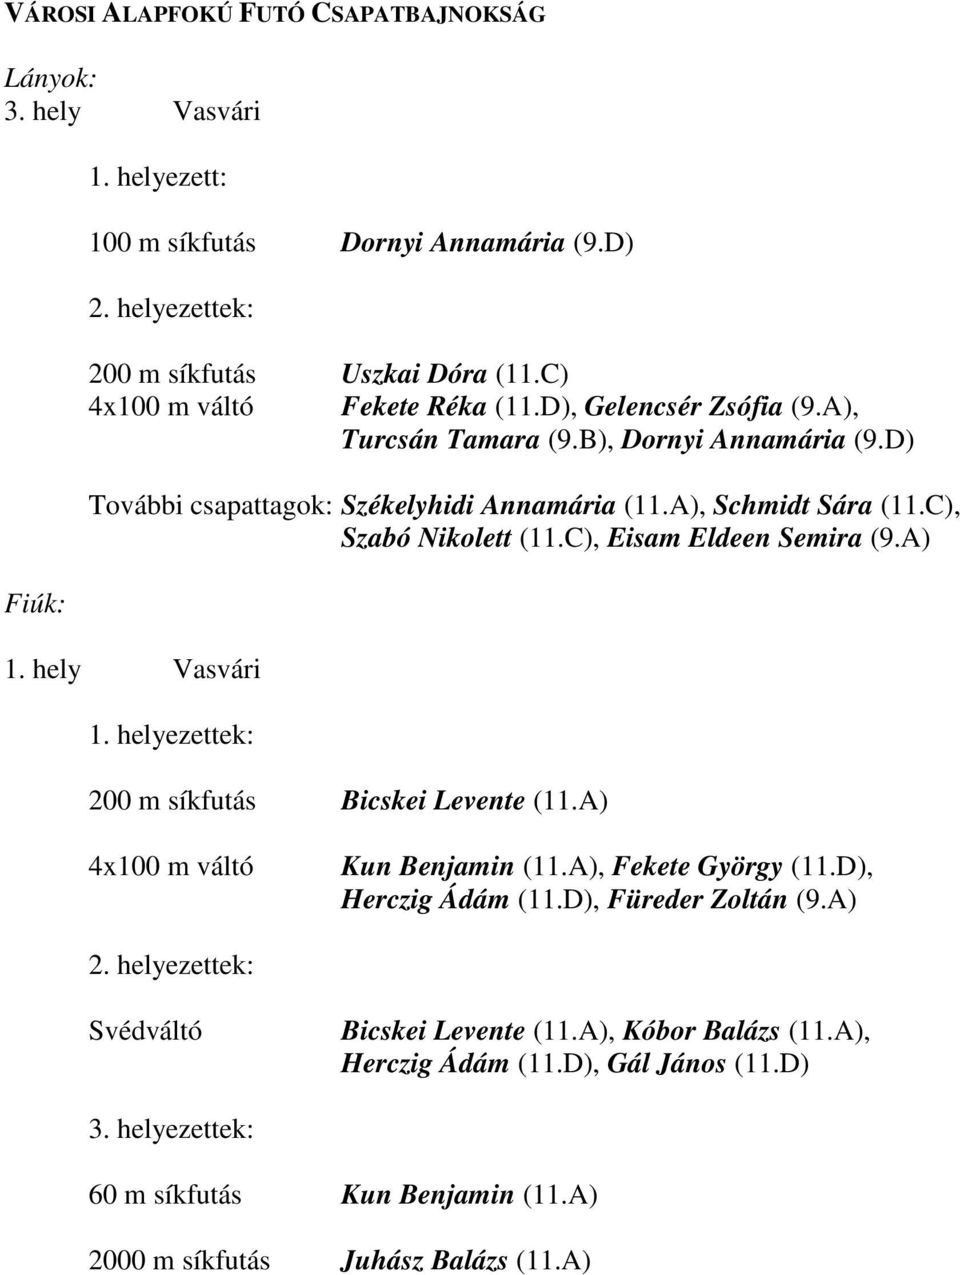 C), Eisam Eldeen Semira (9.A) 1. hely Vasvári 1. helyezettek: 200 m síkfutás Bicskei Levente (11.A) 4x100 m váltó Kun Benjamin (11.A), Fekete György (11.D), Herczig Ádám (11.